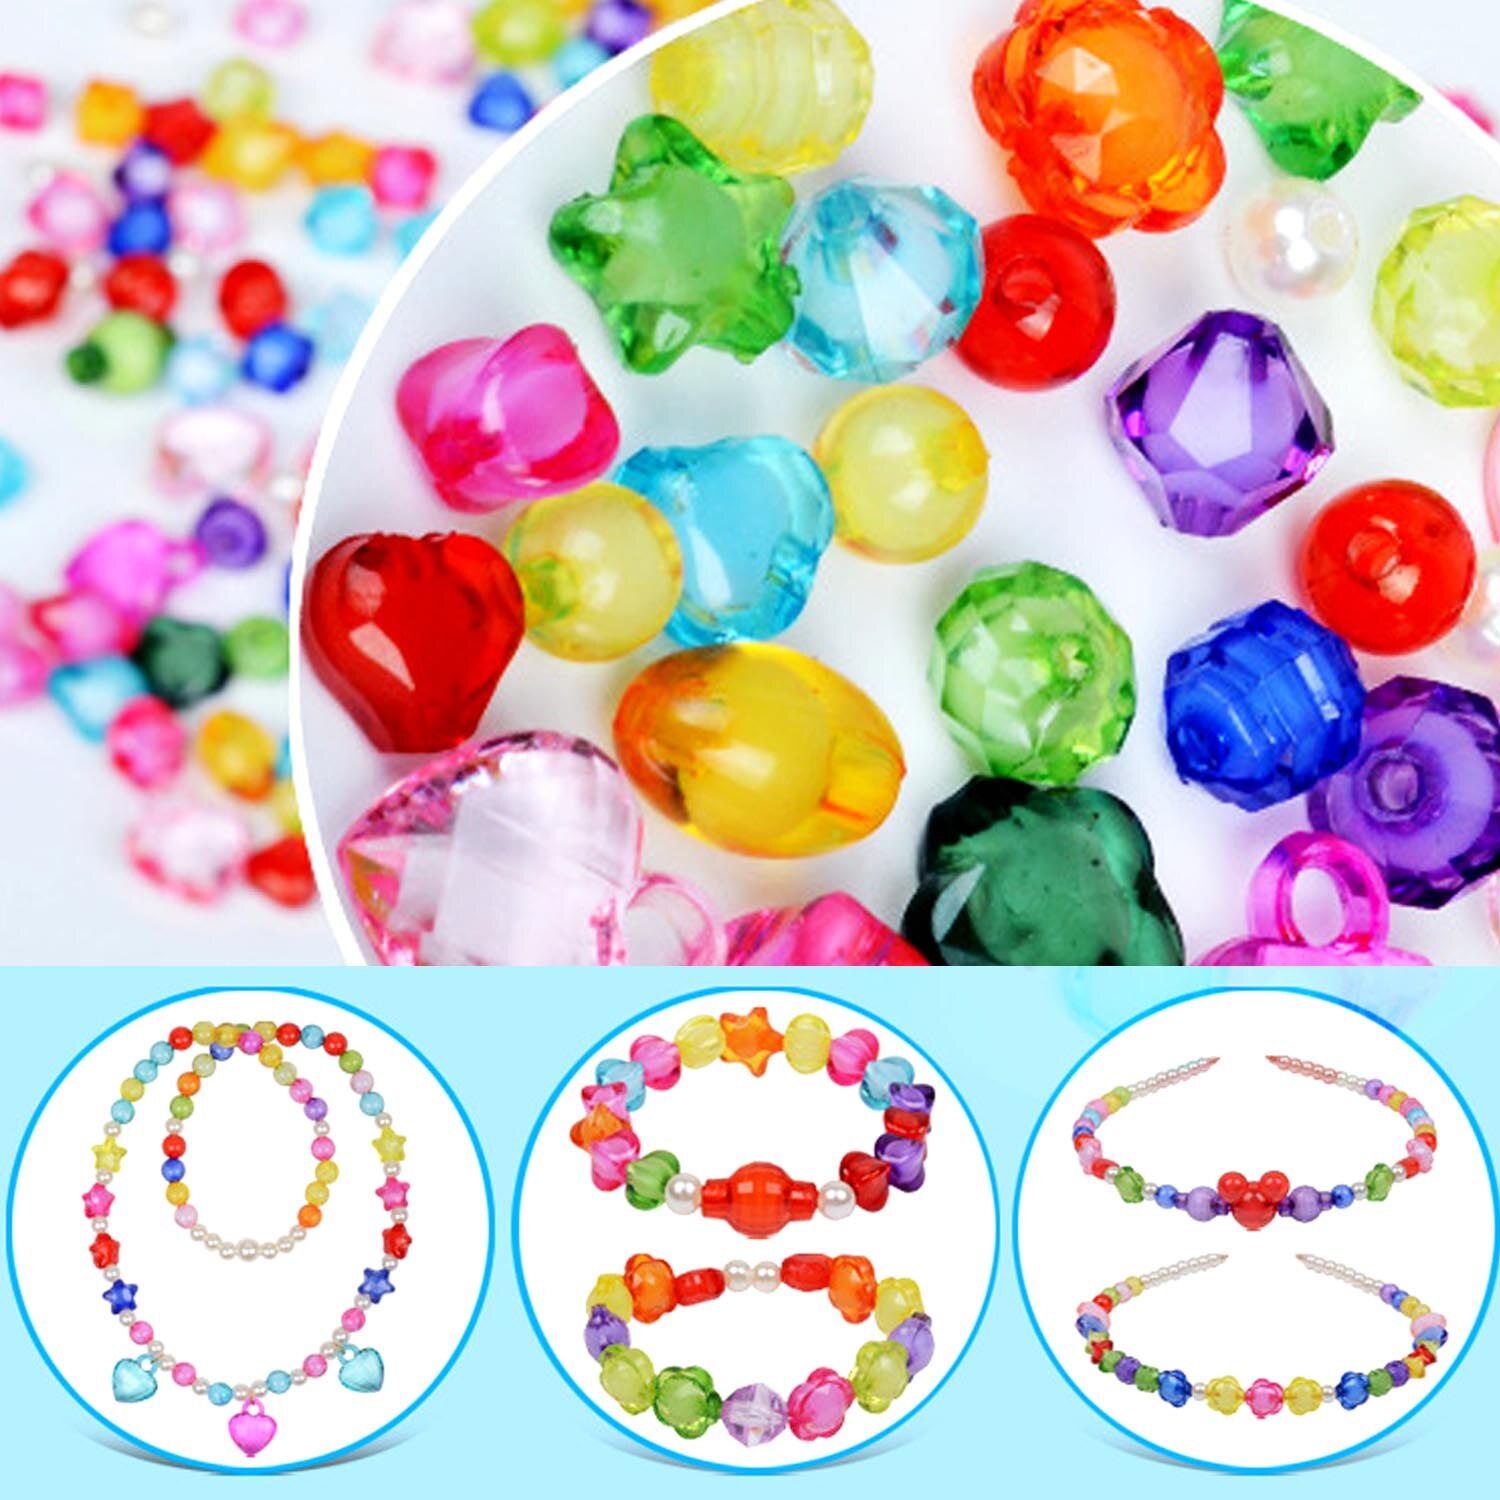 Børn 550 stk farverige akrylperler kit piger diy strengning trådning perle vævning armbånd halskæde smykker gør perle legetøj